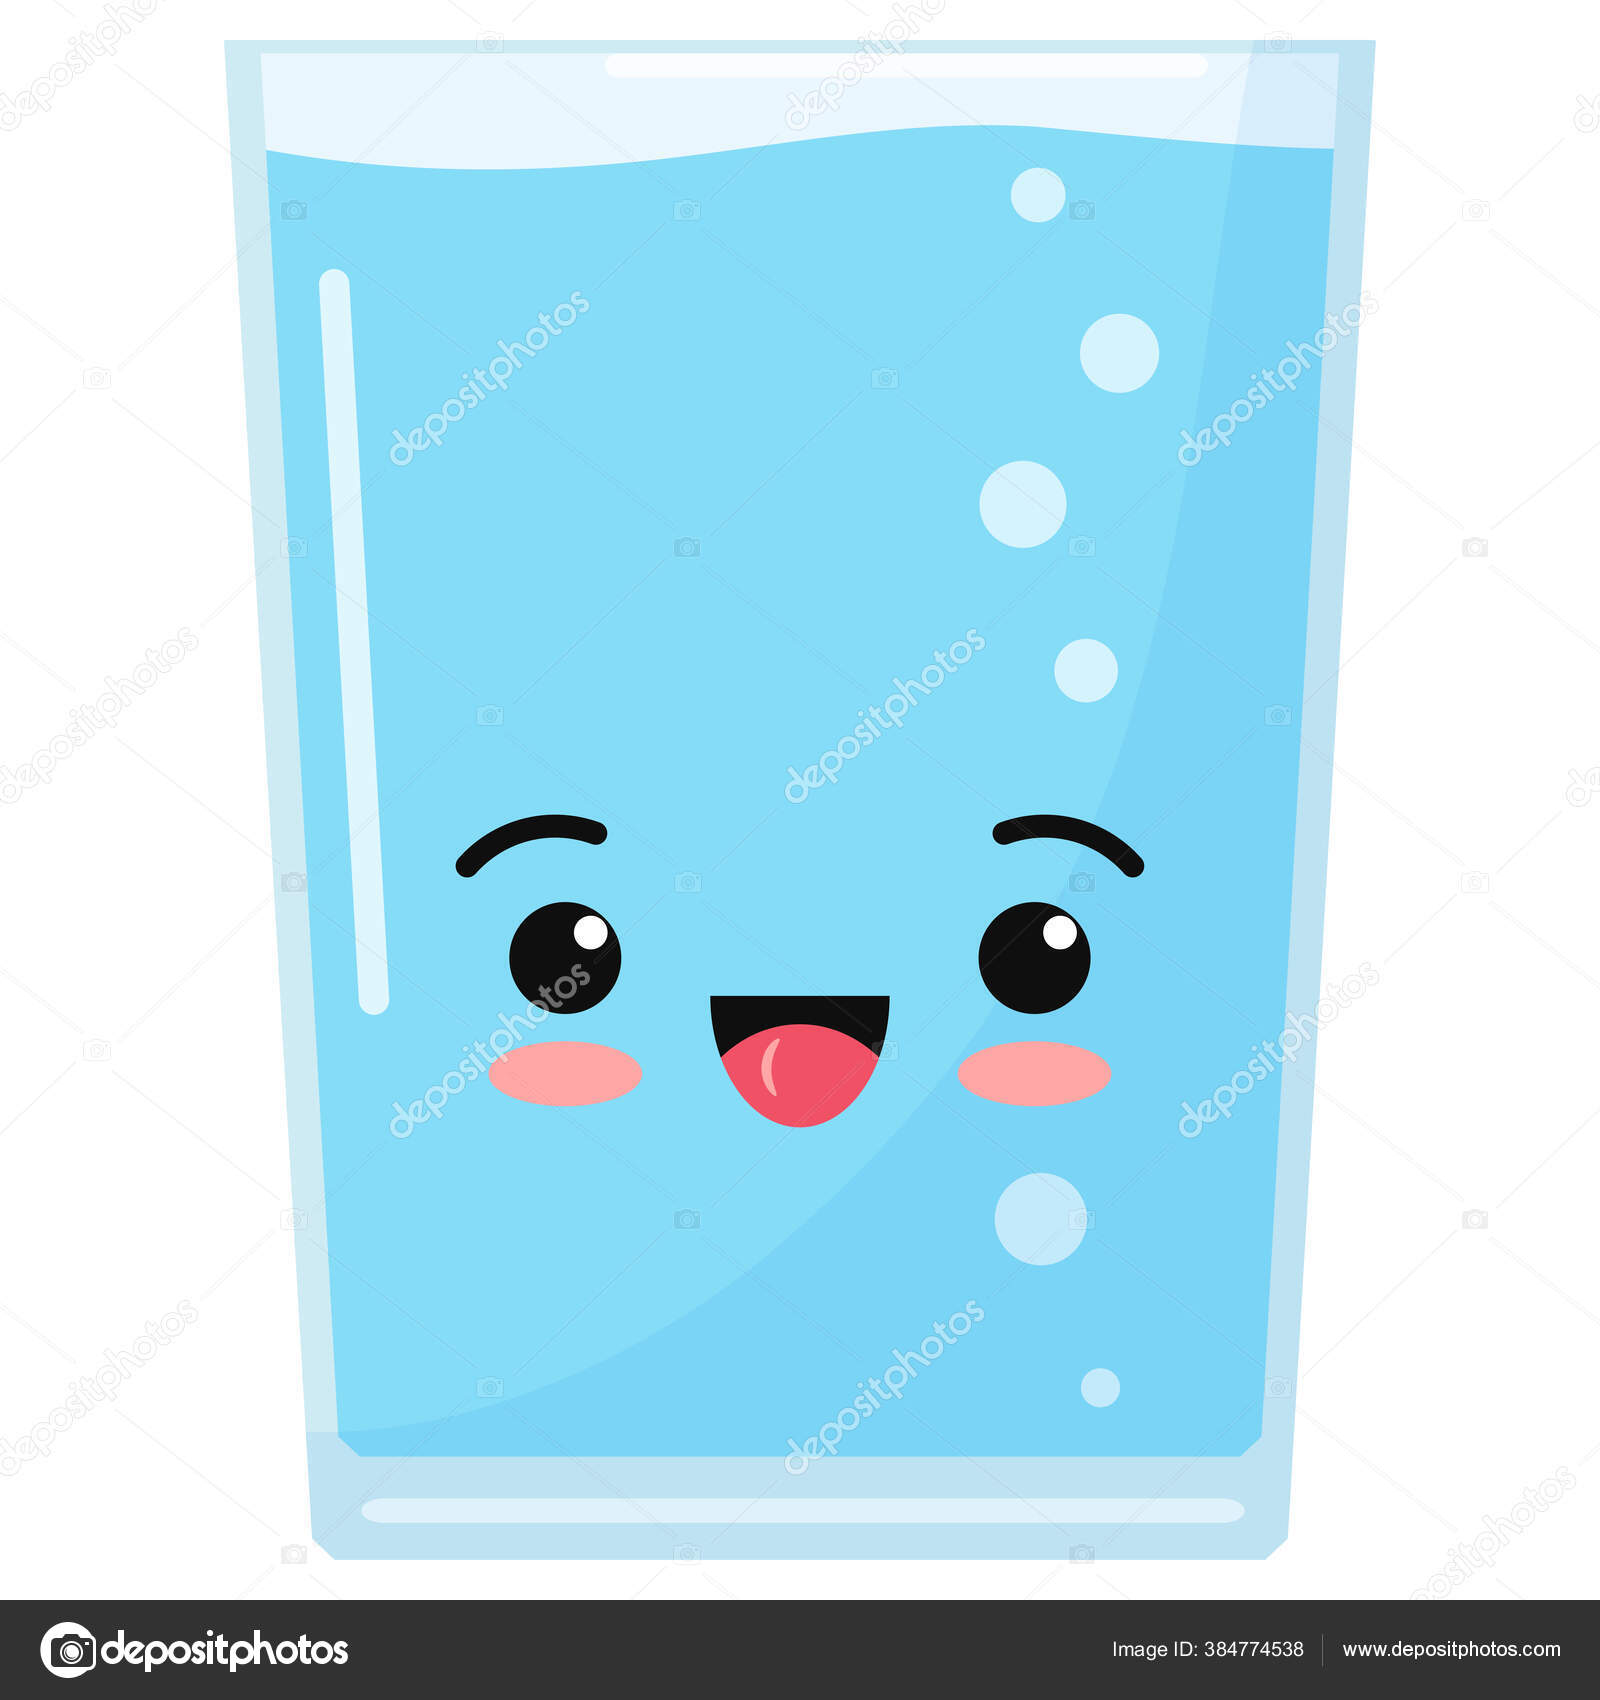 Drink water emoji Vector Art Stock Images | Depositphotos